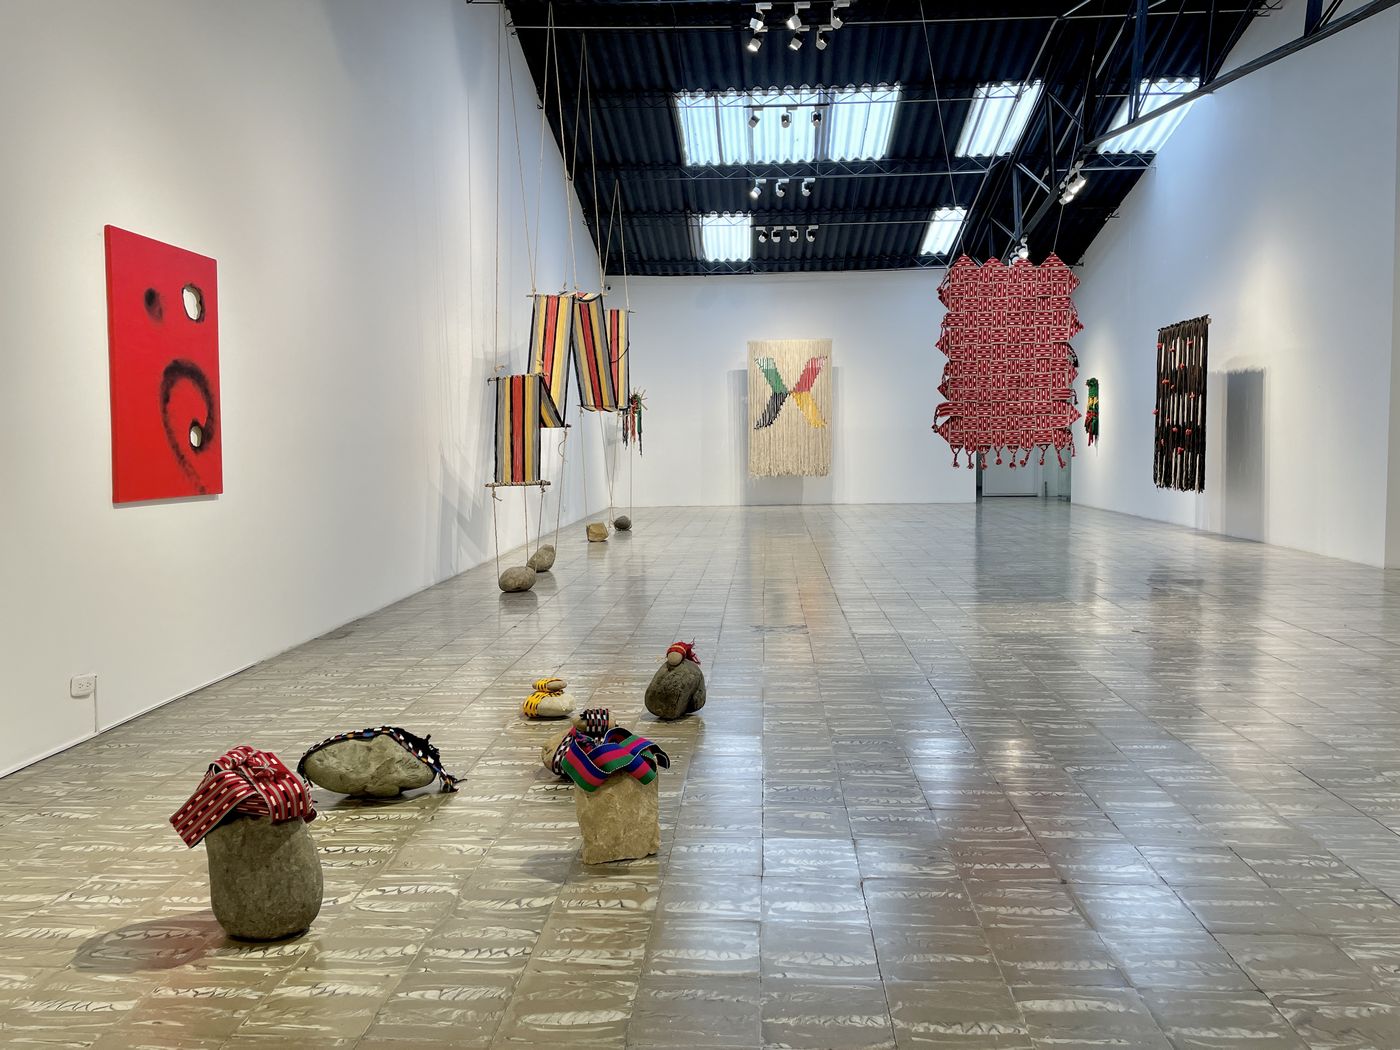 Vista de la exposición “Ximoneem k’in Soloneem” (Anudar y Desanudar), de Antonio Pichillá, en Galería Elvira Moreno, Bogotá, 2023. Foto cortesía de la galería